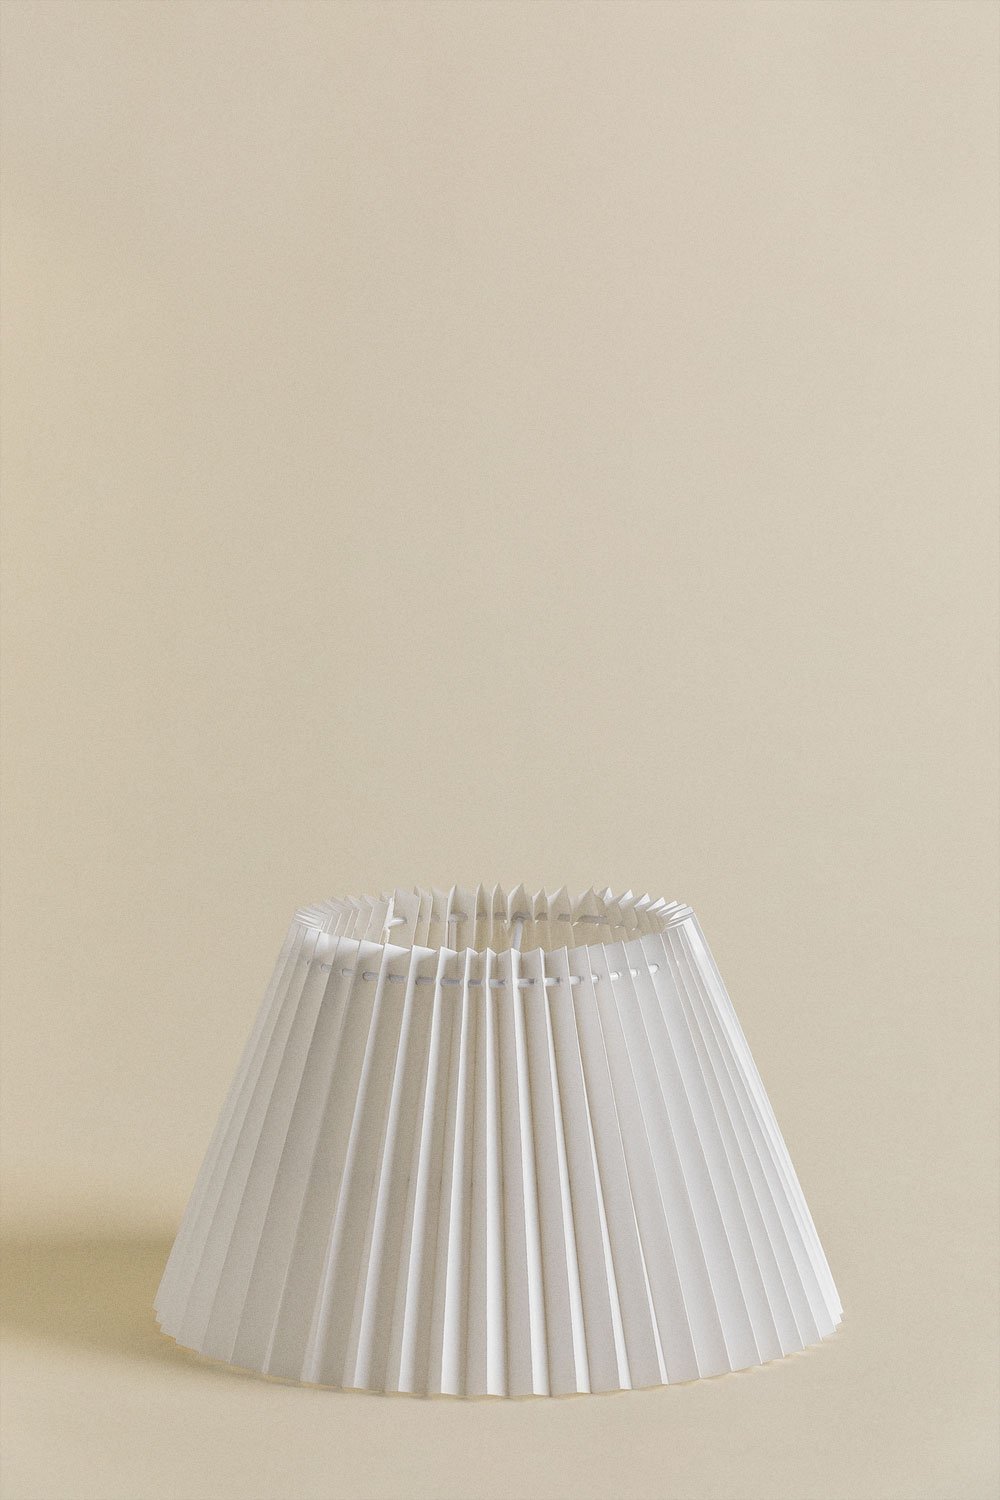 Pantalla para Lámpara en Papel de Arroz Oguran        , imagen de galería 1